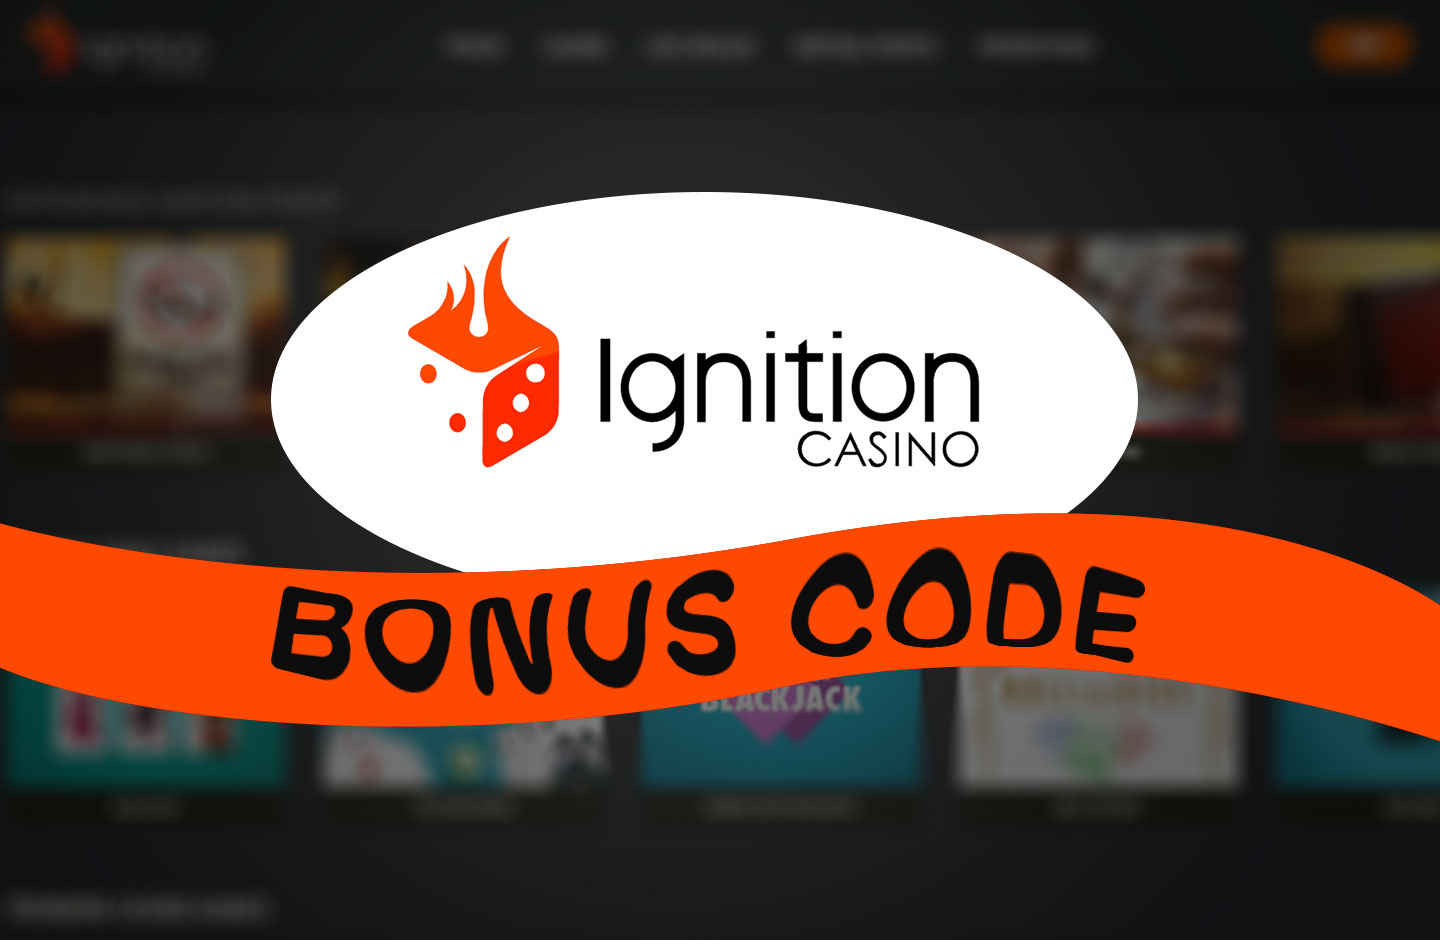 no deposit bonus ignition casino